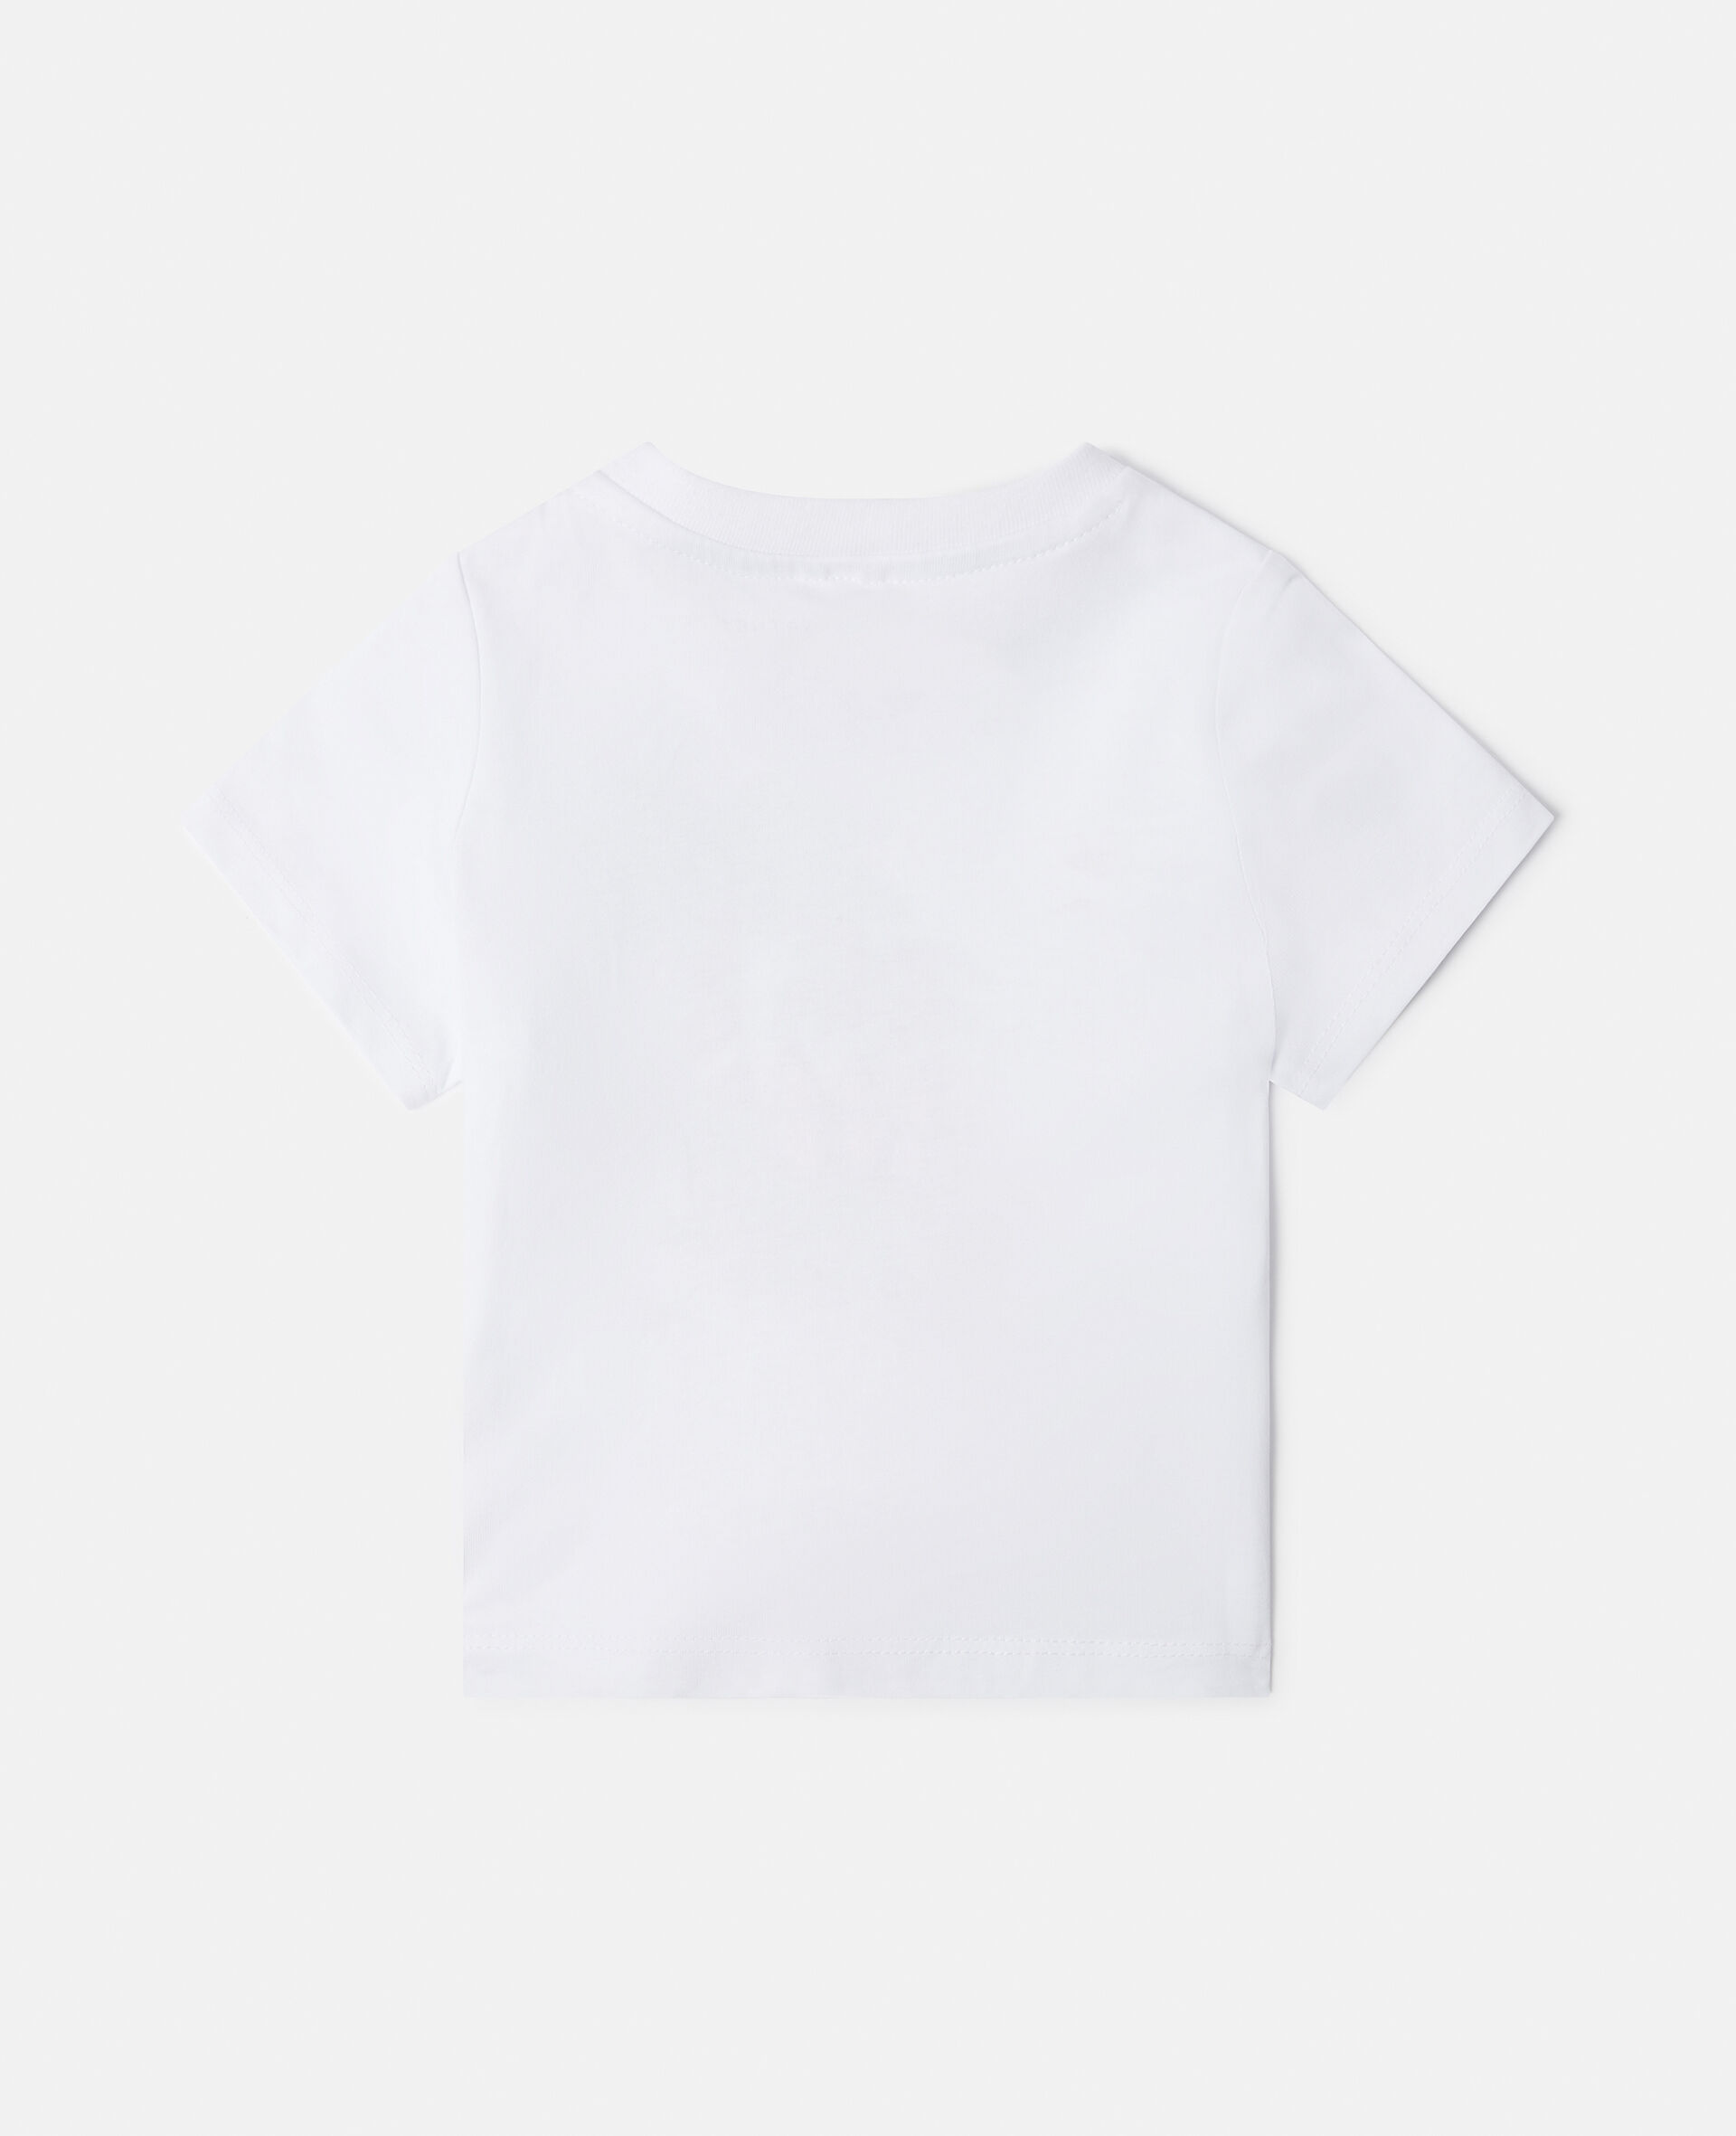 Gecko Motif T-Shirt-White-large image number 2